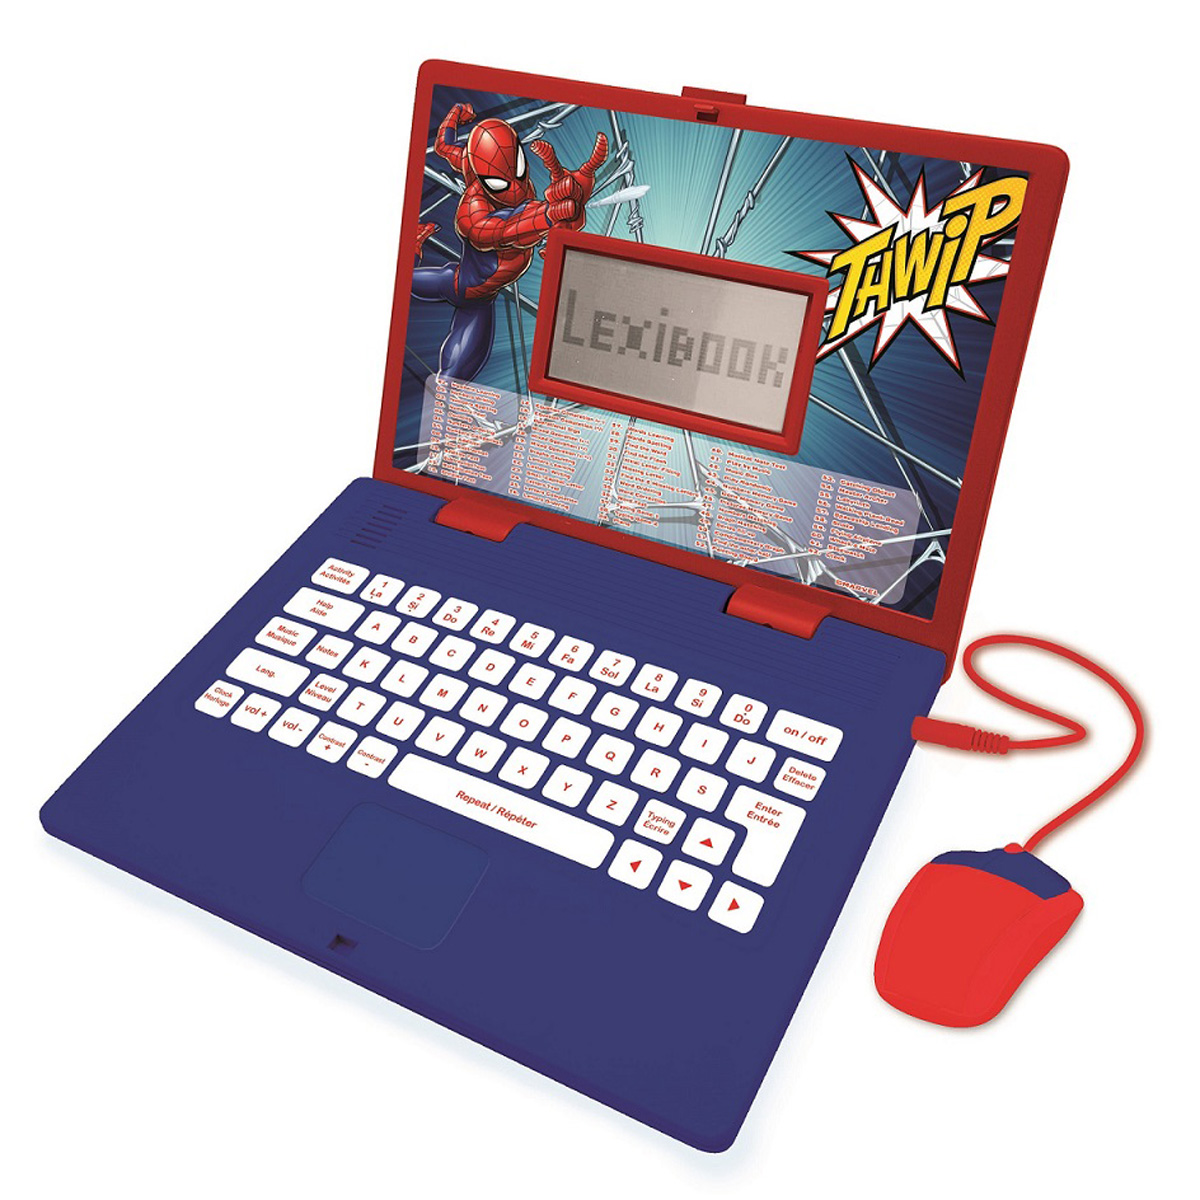 Englisch) - Zweisprachig LEXIBOOK Lerncomputer, Lernlaptop Spider-Man / Blau/Rot (Deutsch